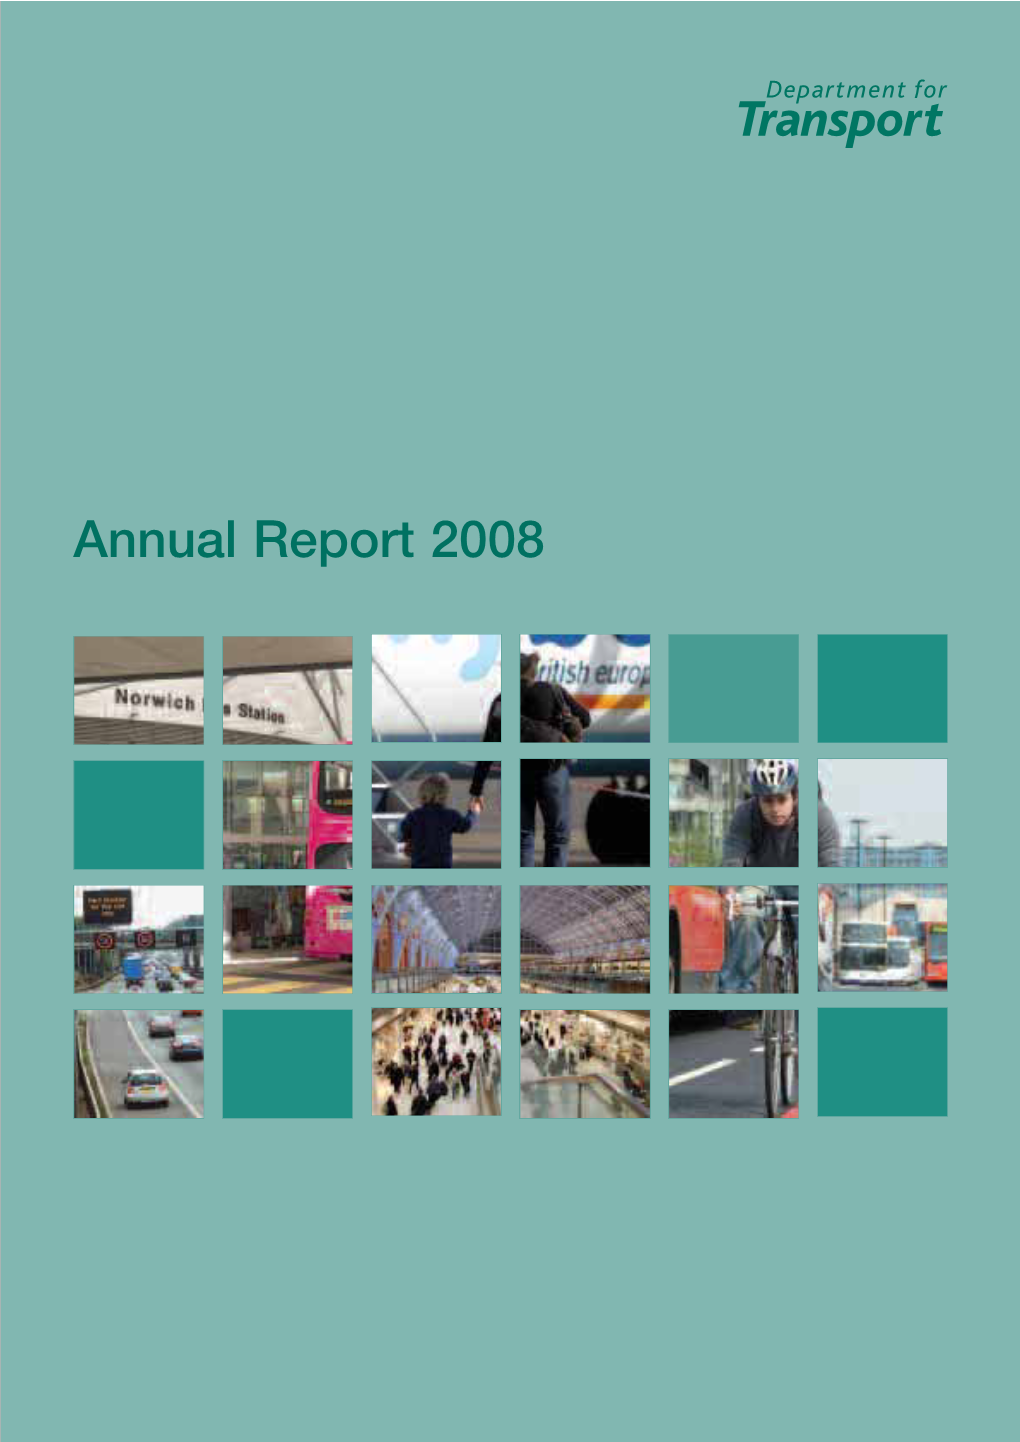 Department of Transport Annual Report 2008 CM 7395